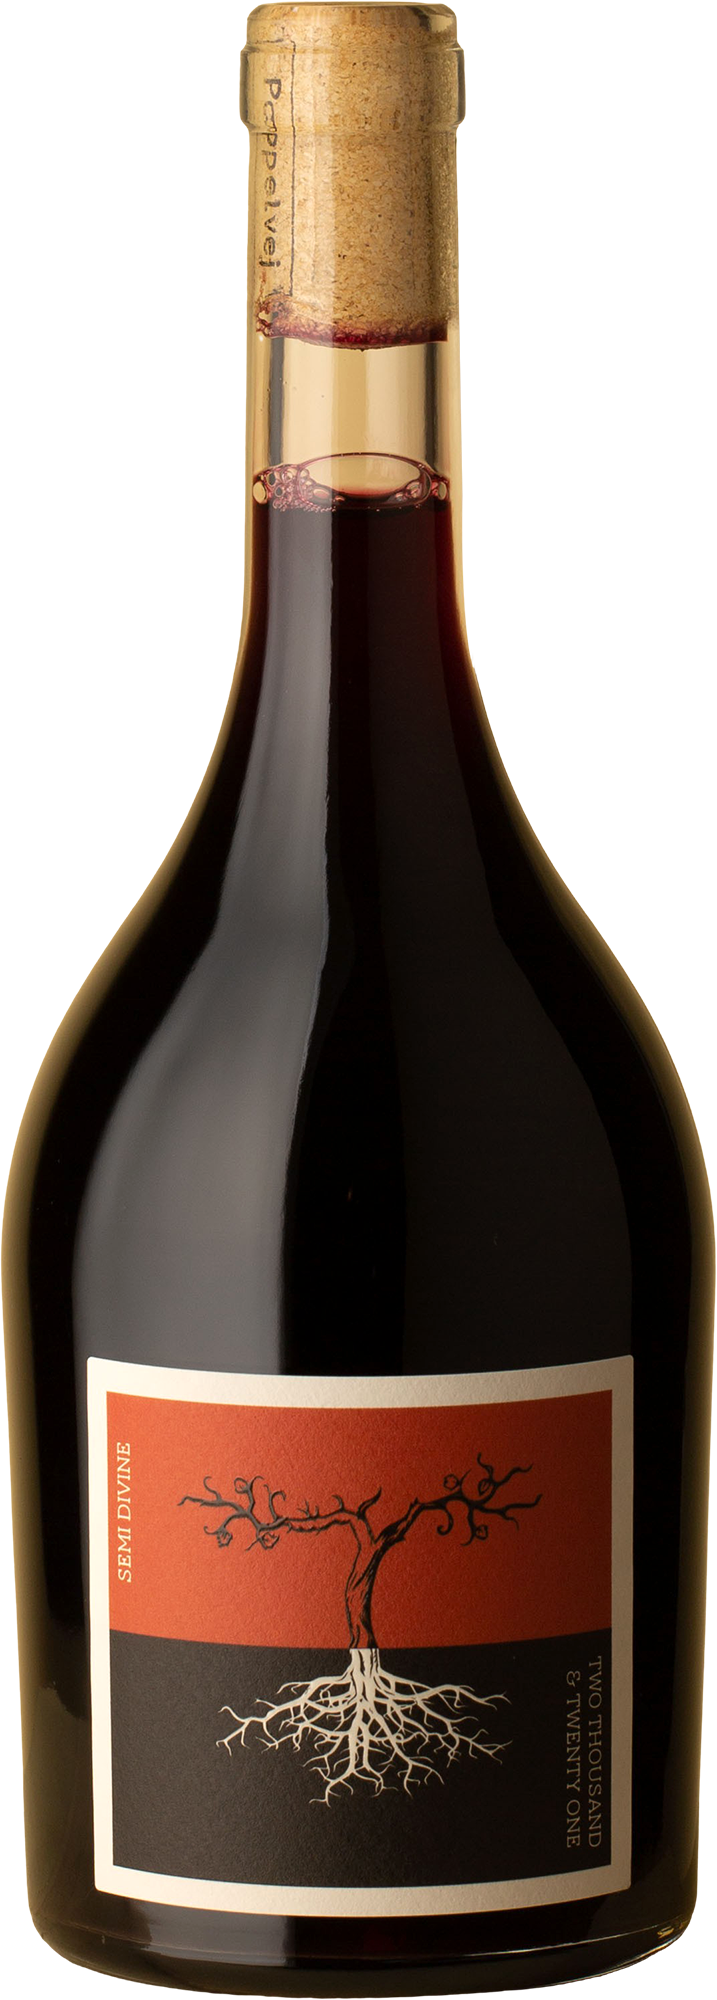 Poppelvej - Semi Divine Lagrein 2021 Red Wine